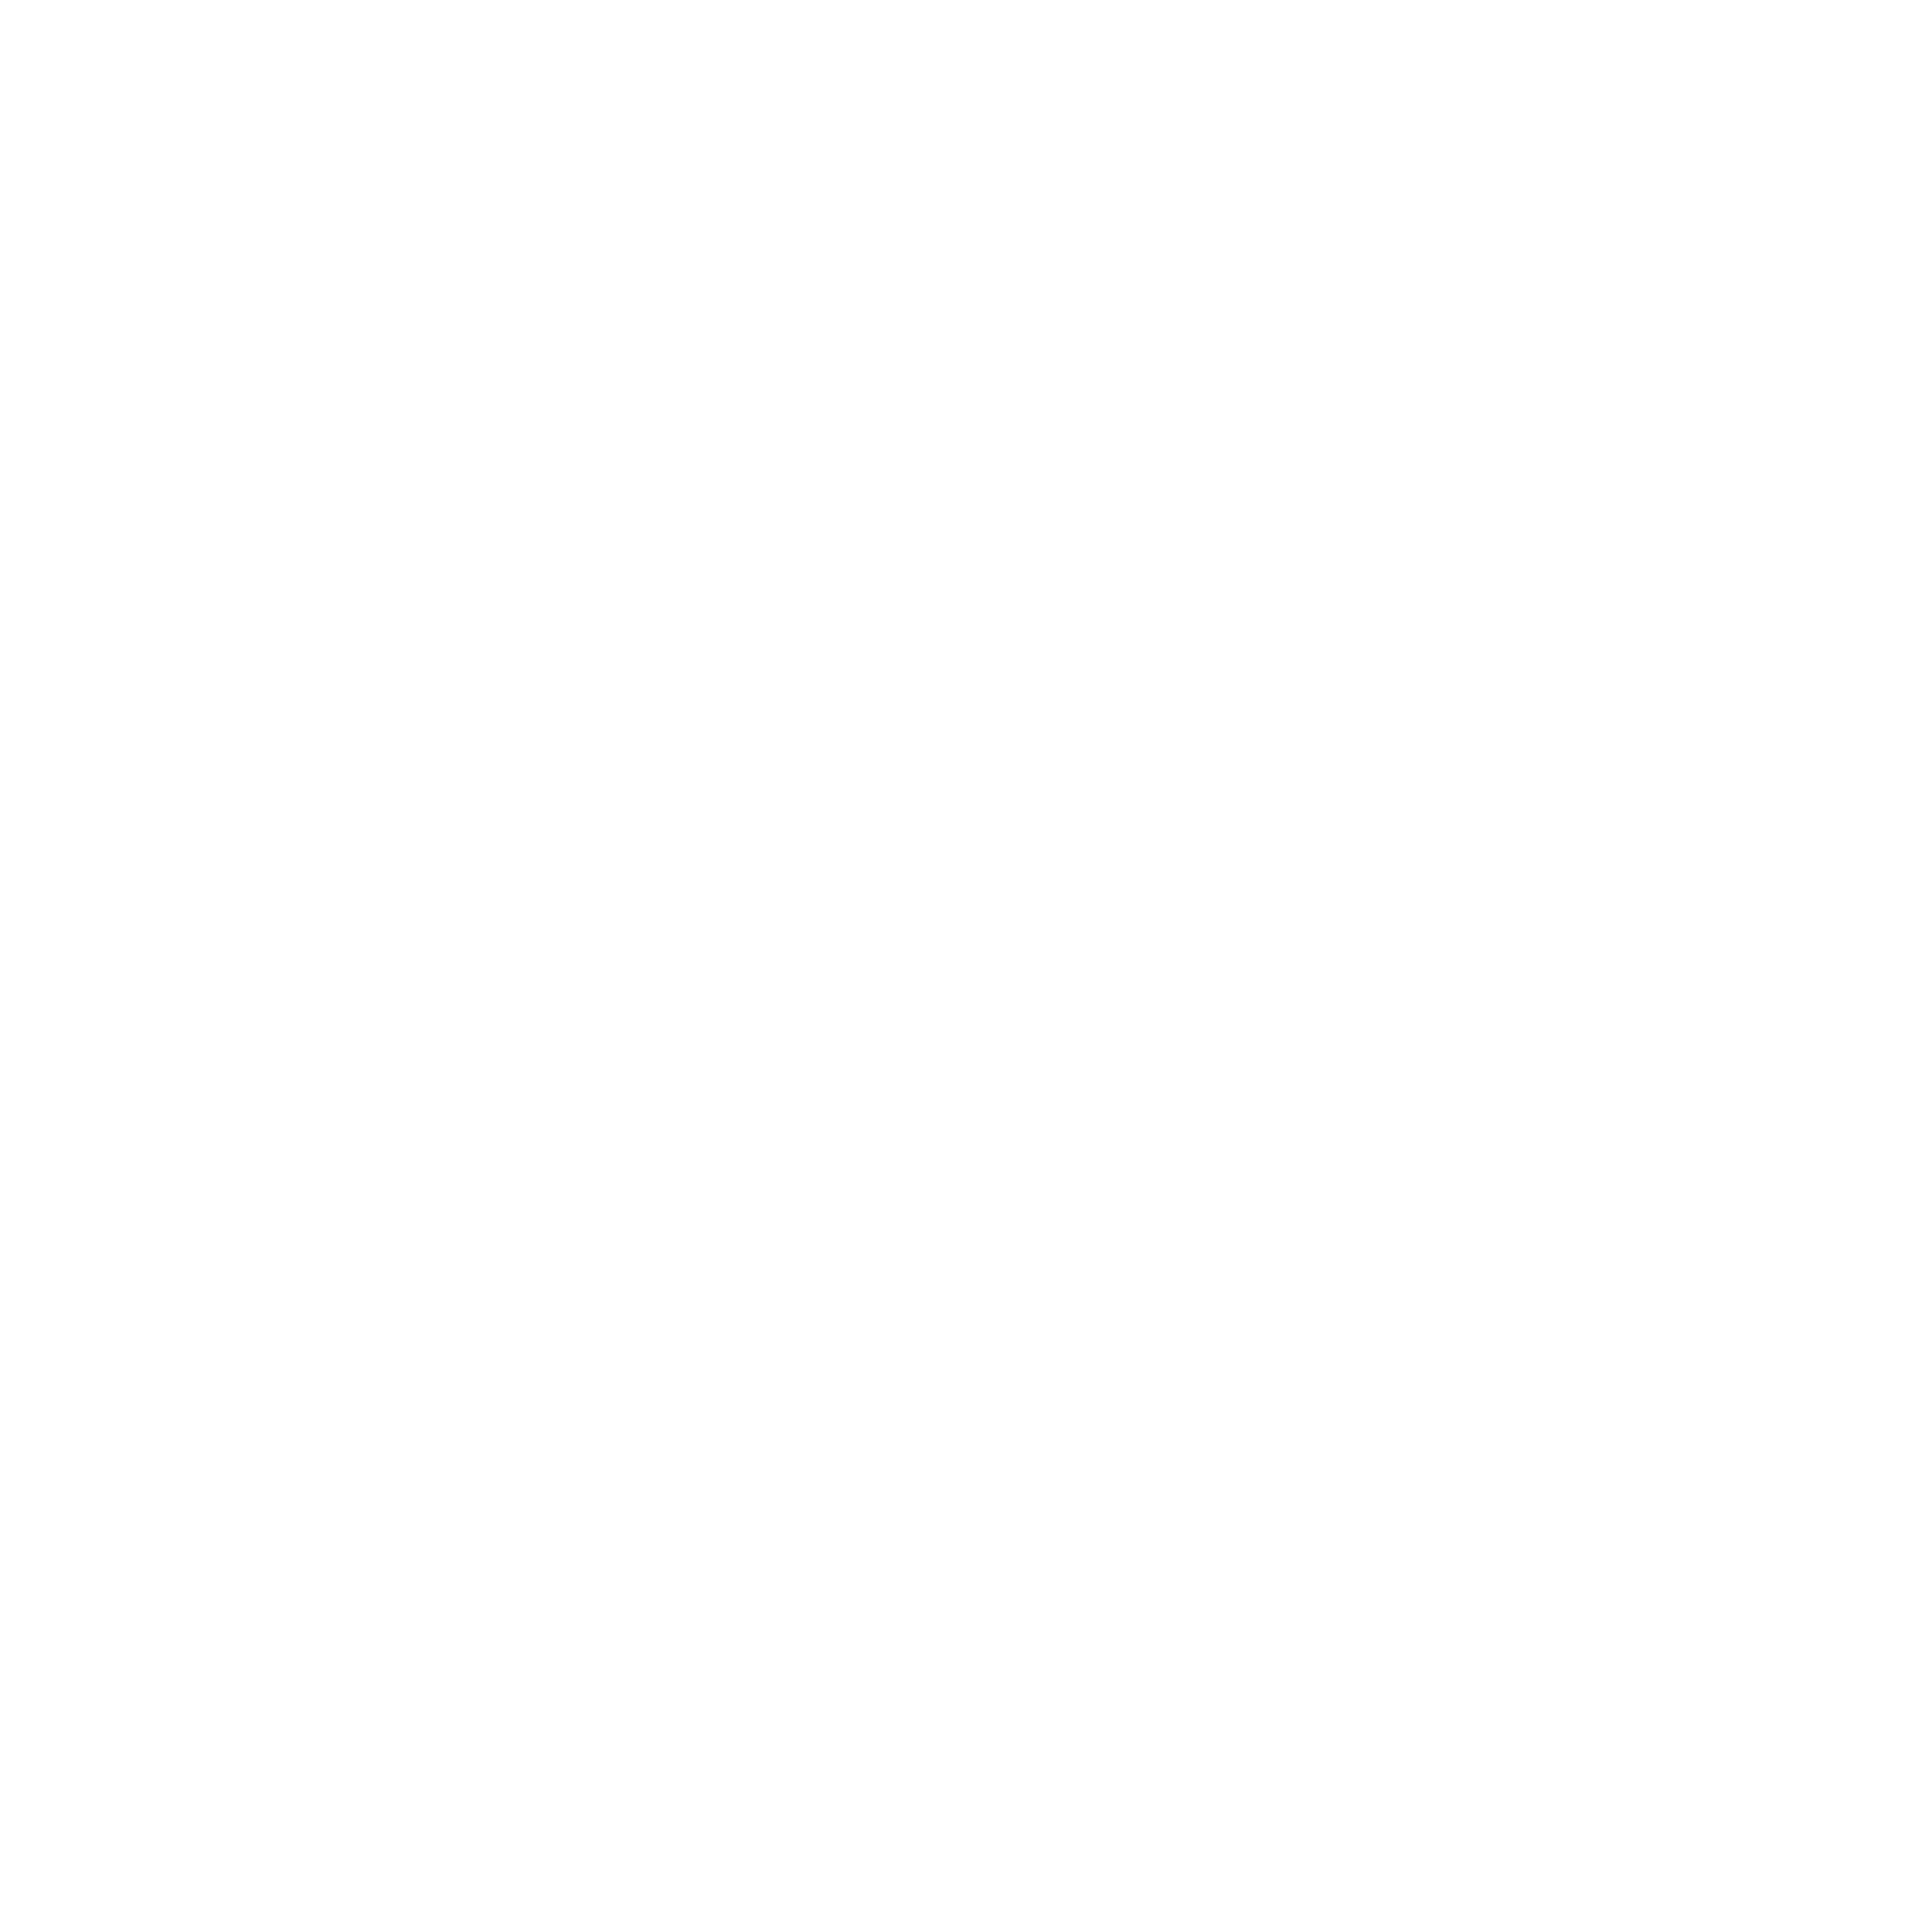 La Cherry Coffee